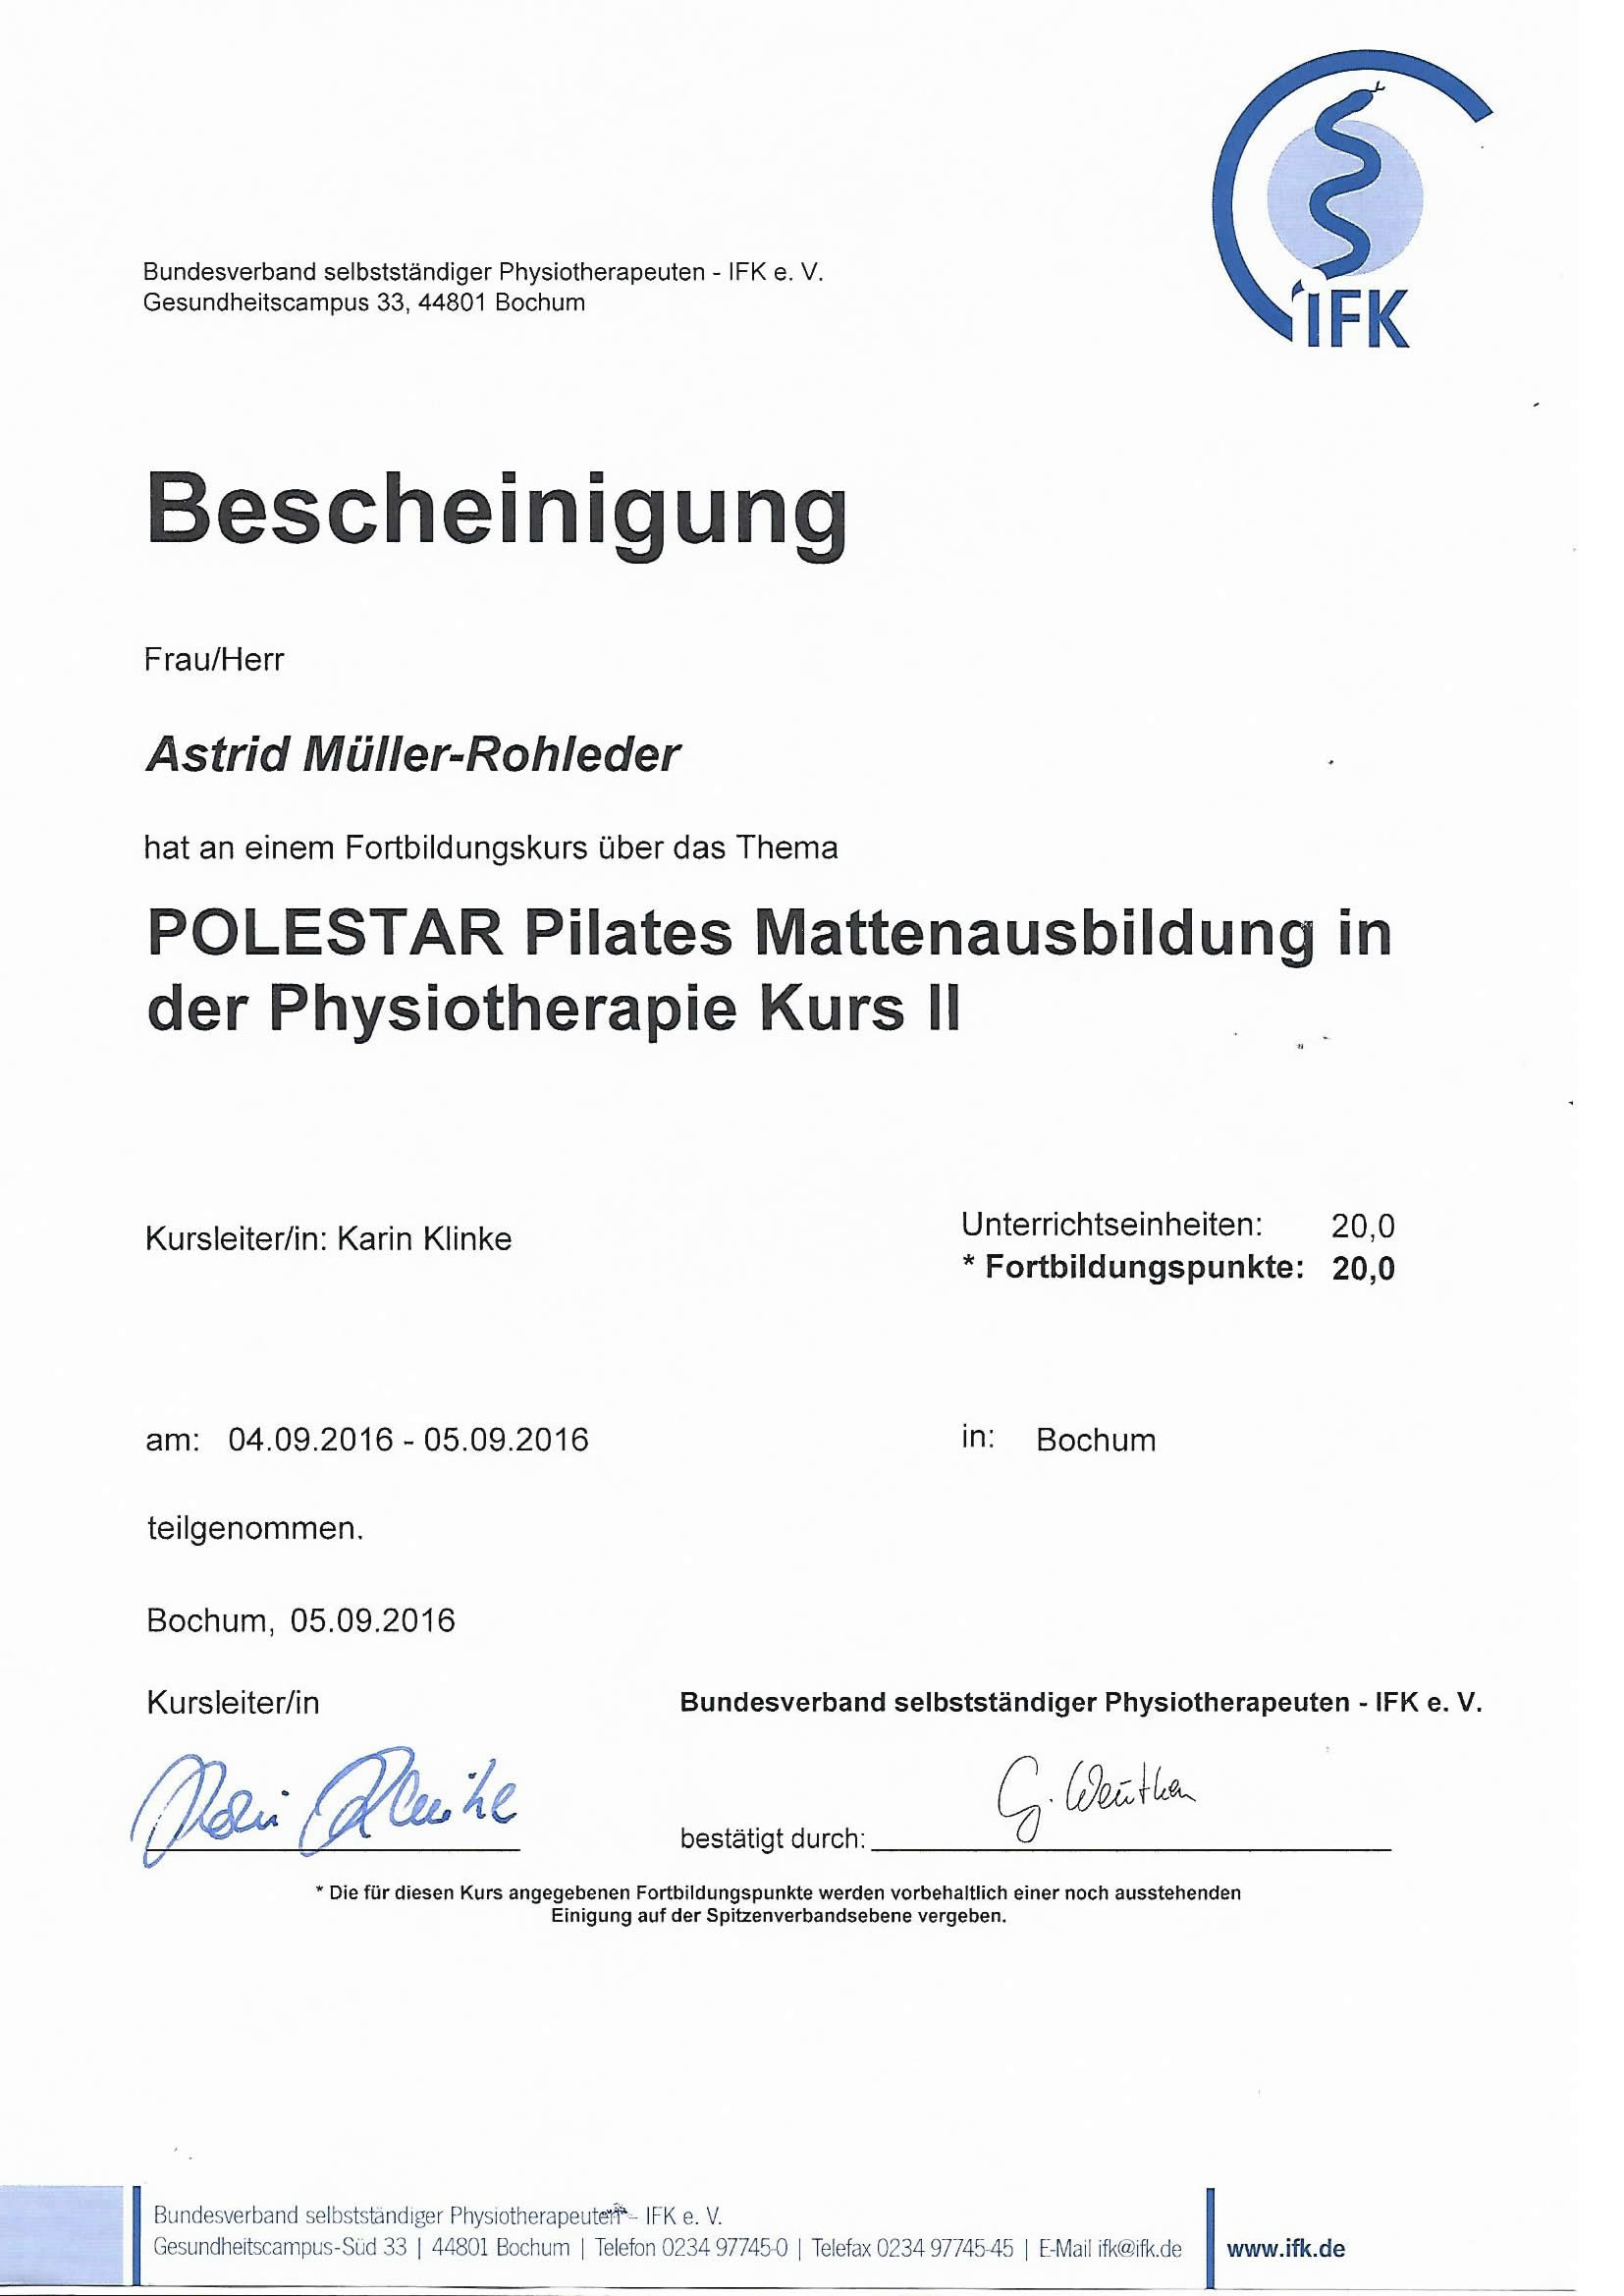 Bescheinigung POLESTAR Pilates Mattenausbildung - Astrid Müller-Rohleder